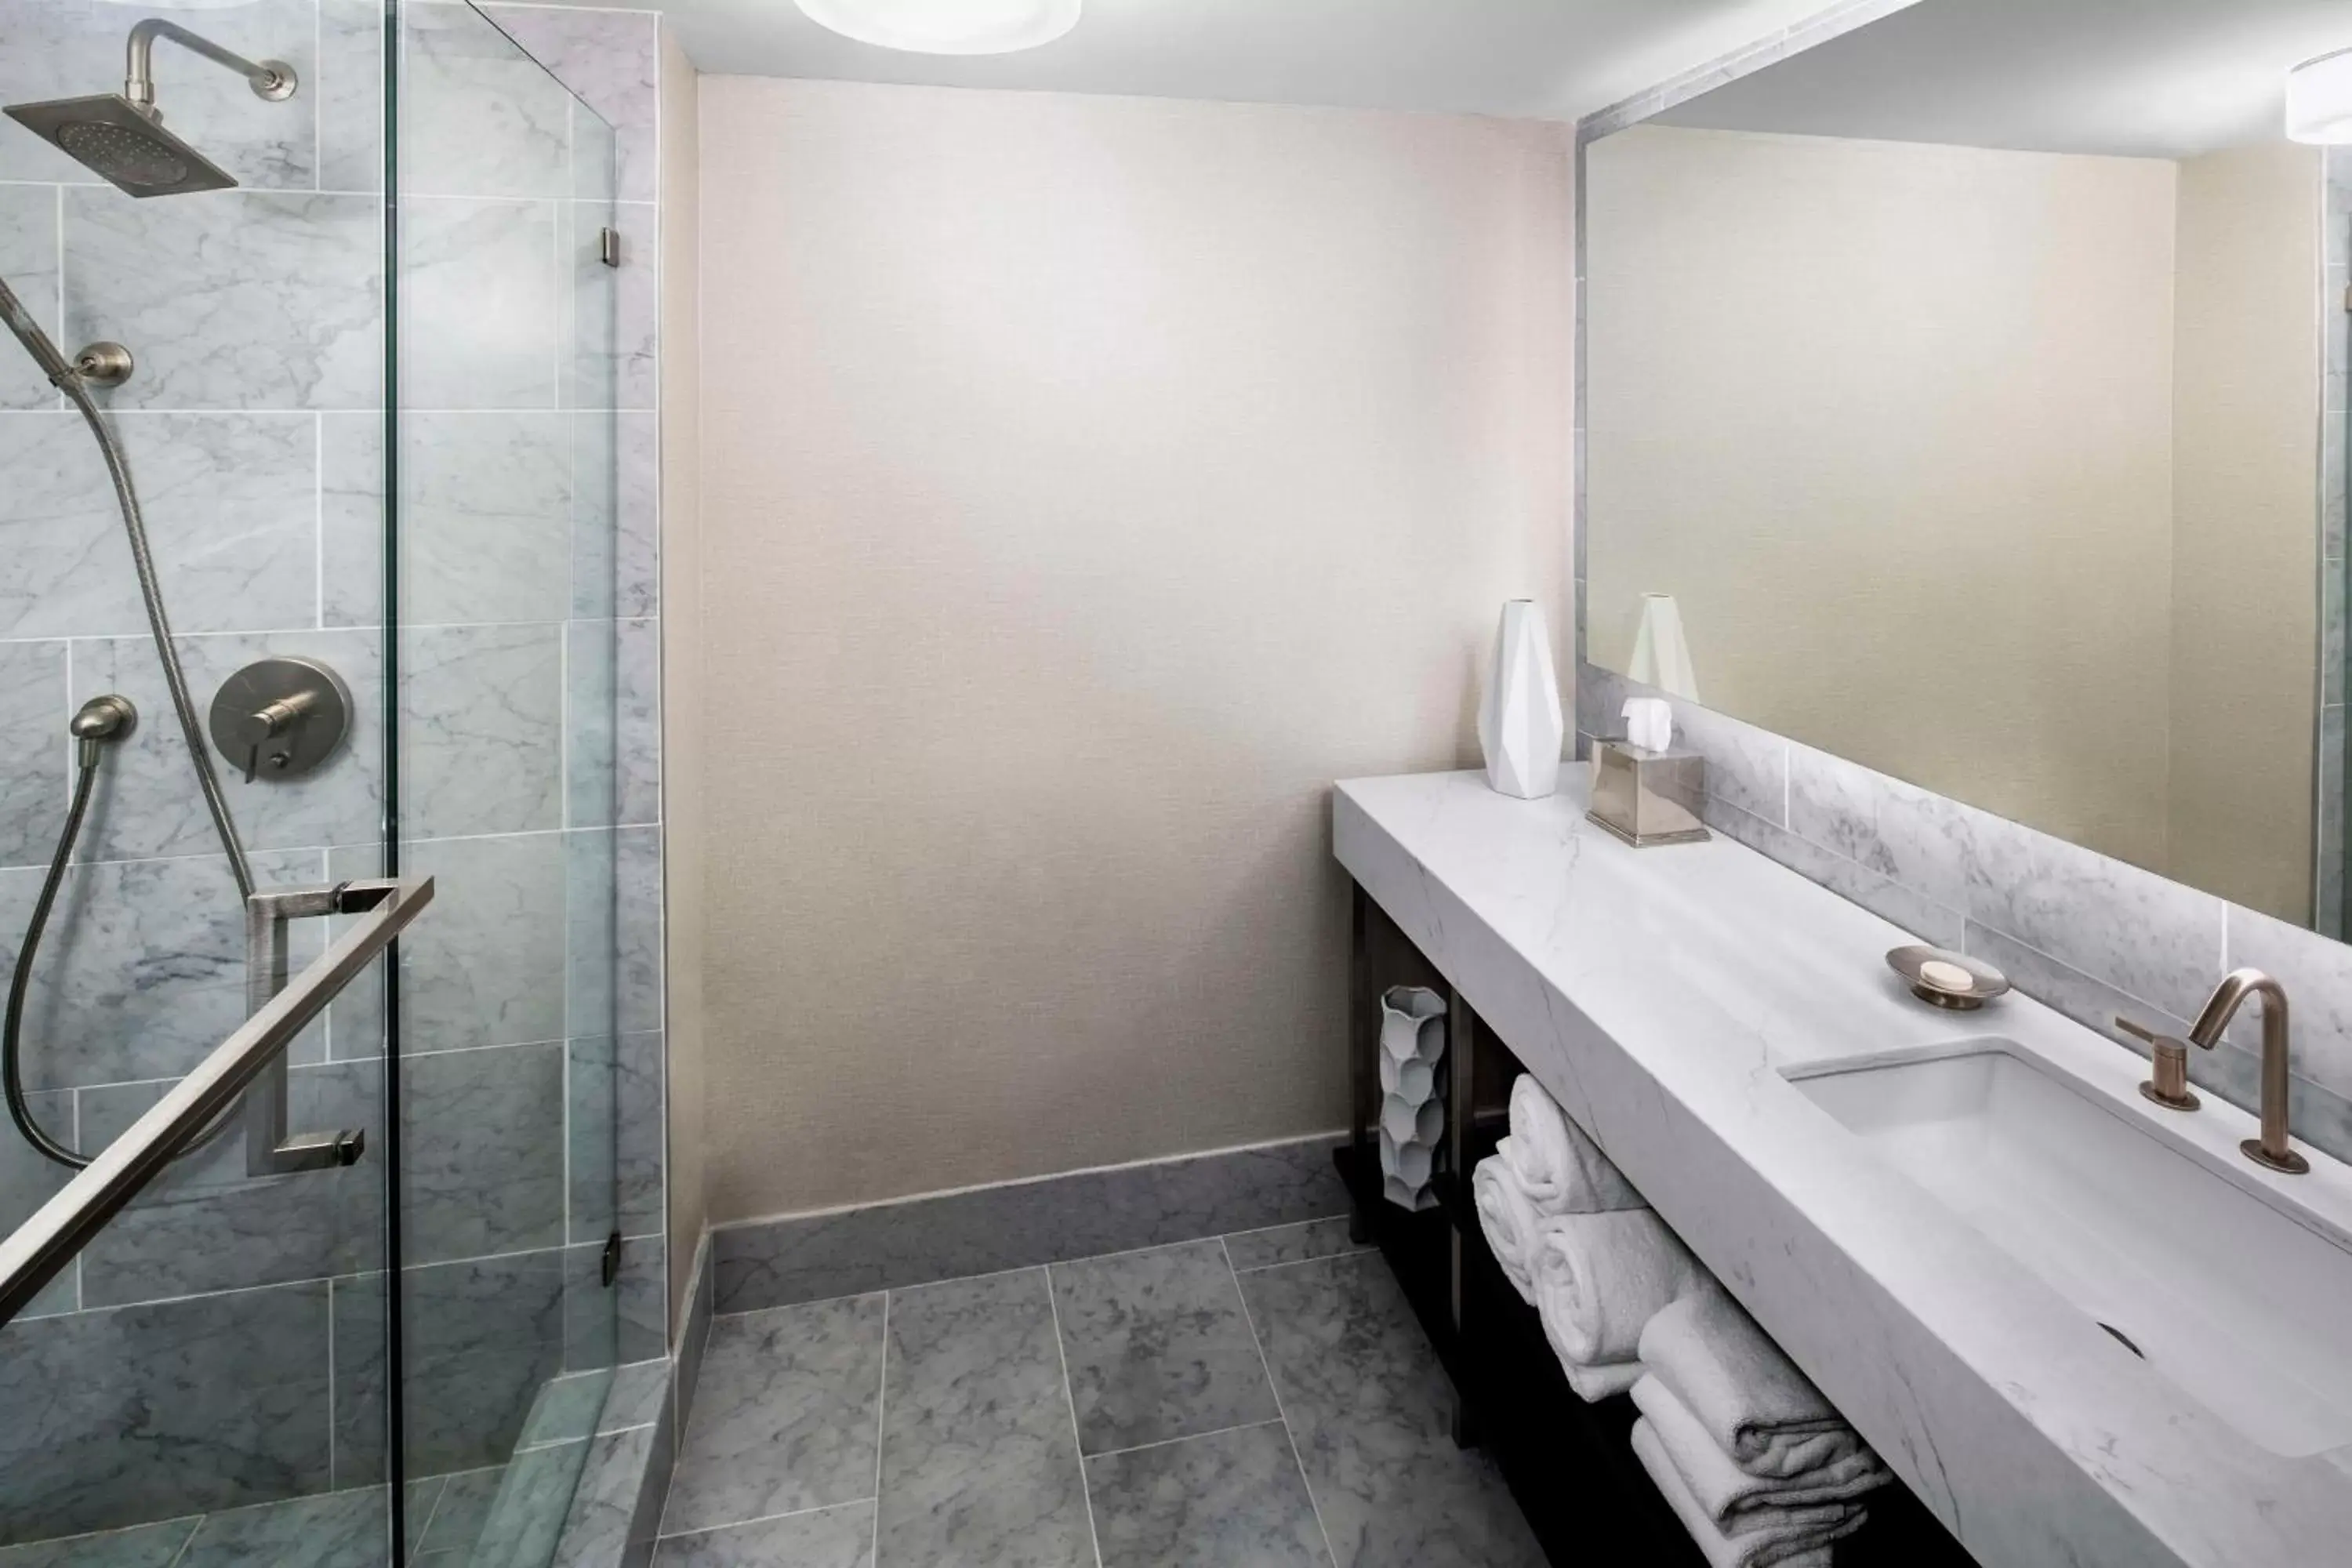 Photo of the whole room, Bathroom in Hyatt Regency Wichita